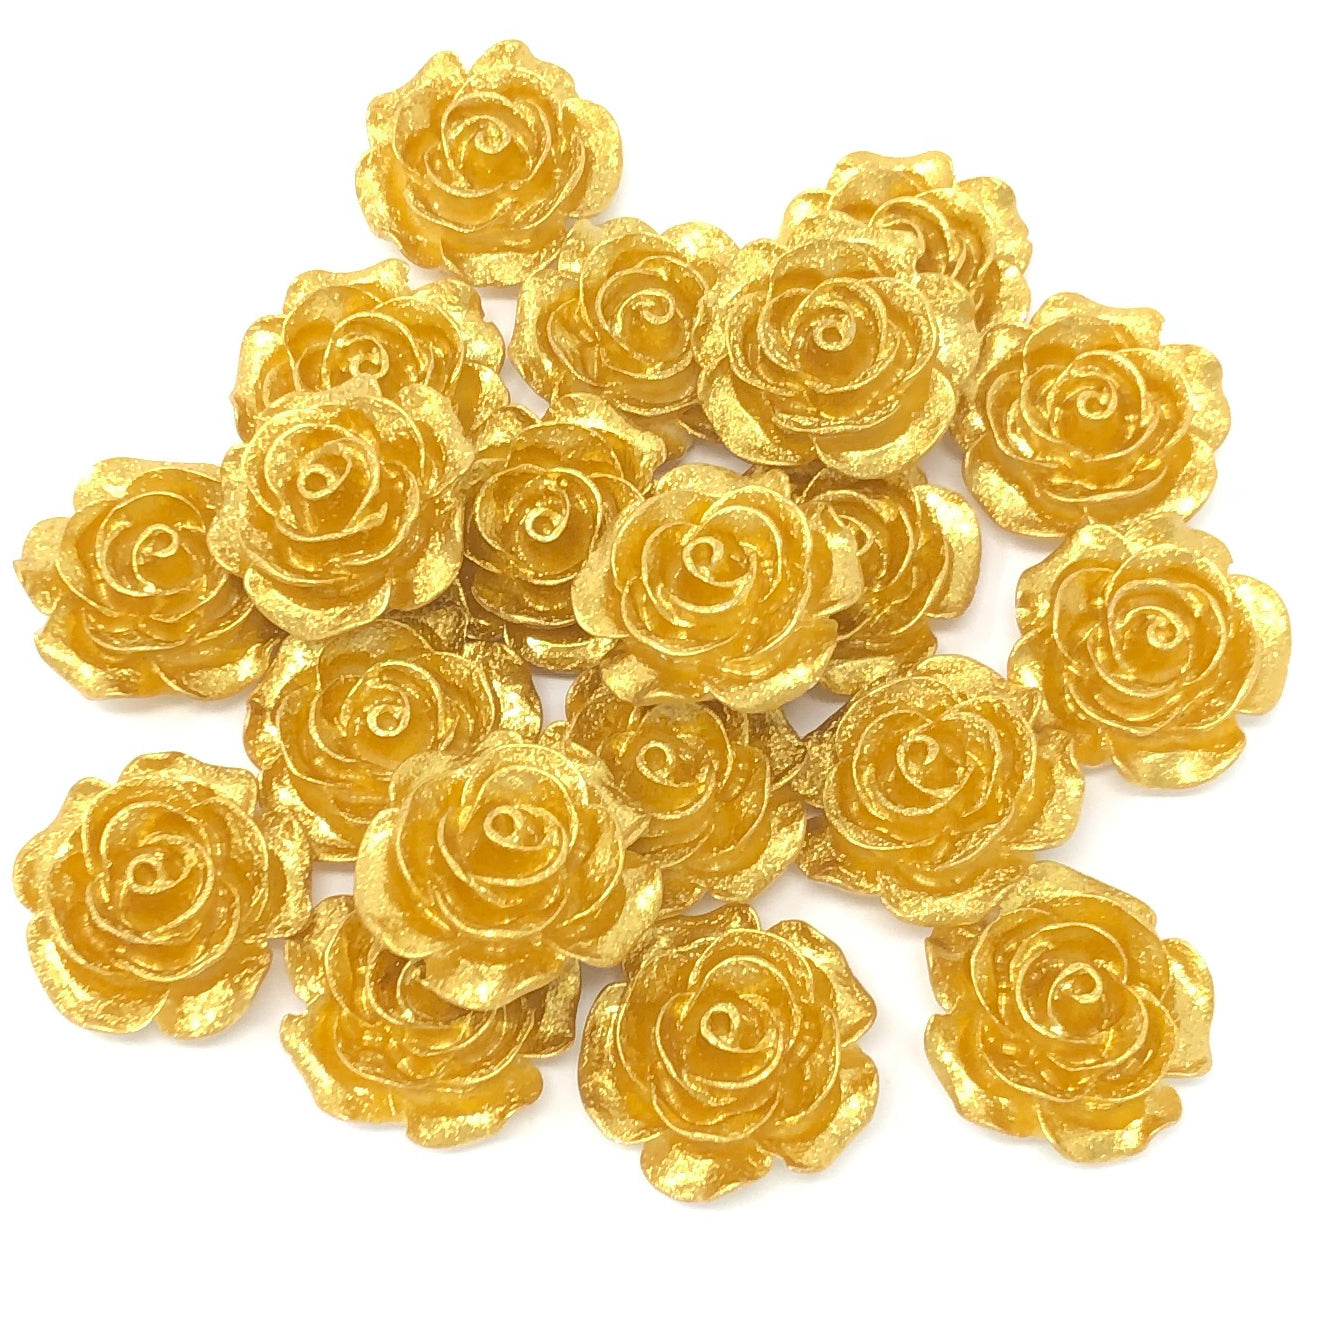 Gold 20mm Resin Roses Flatbacks - Pack of 20